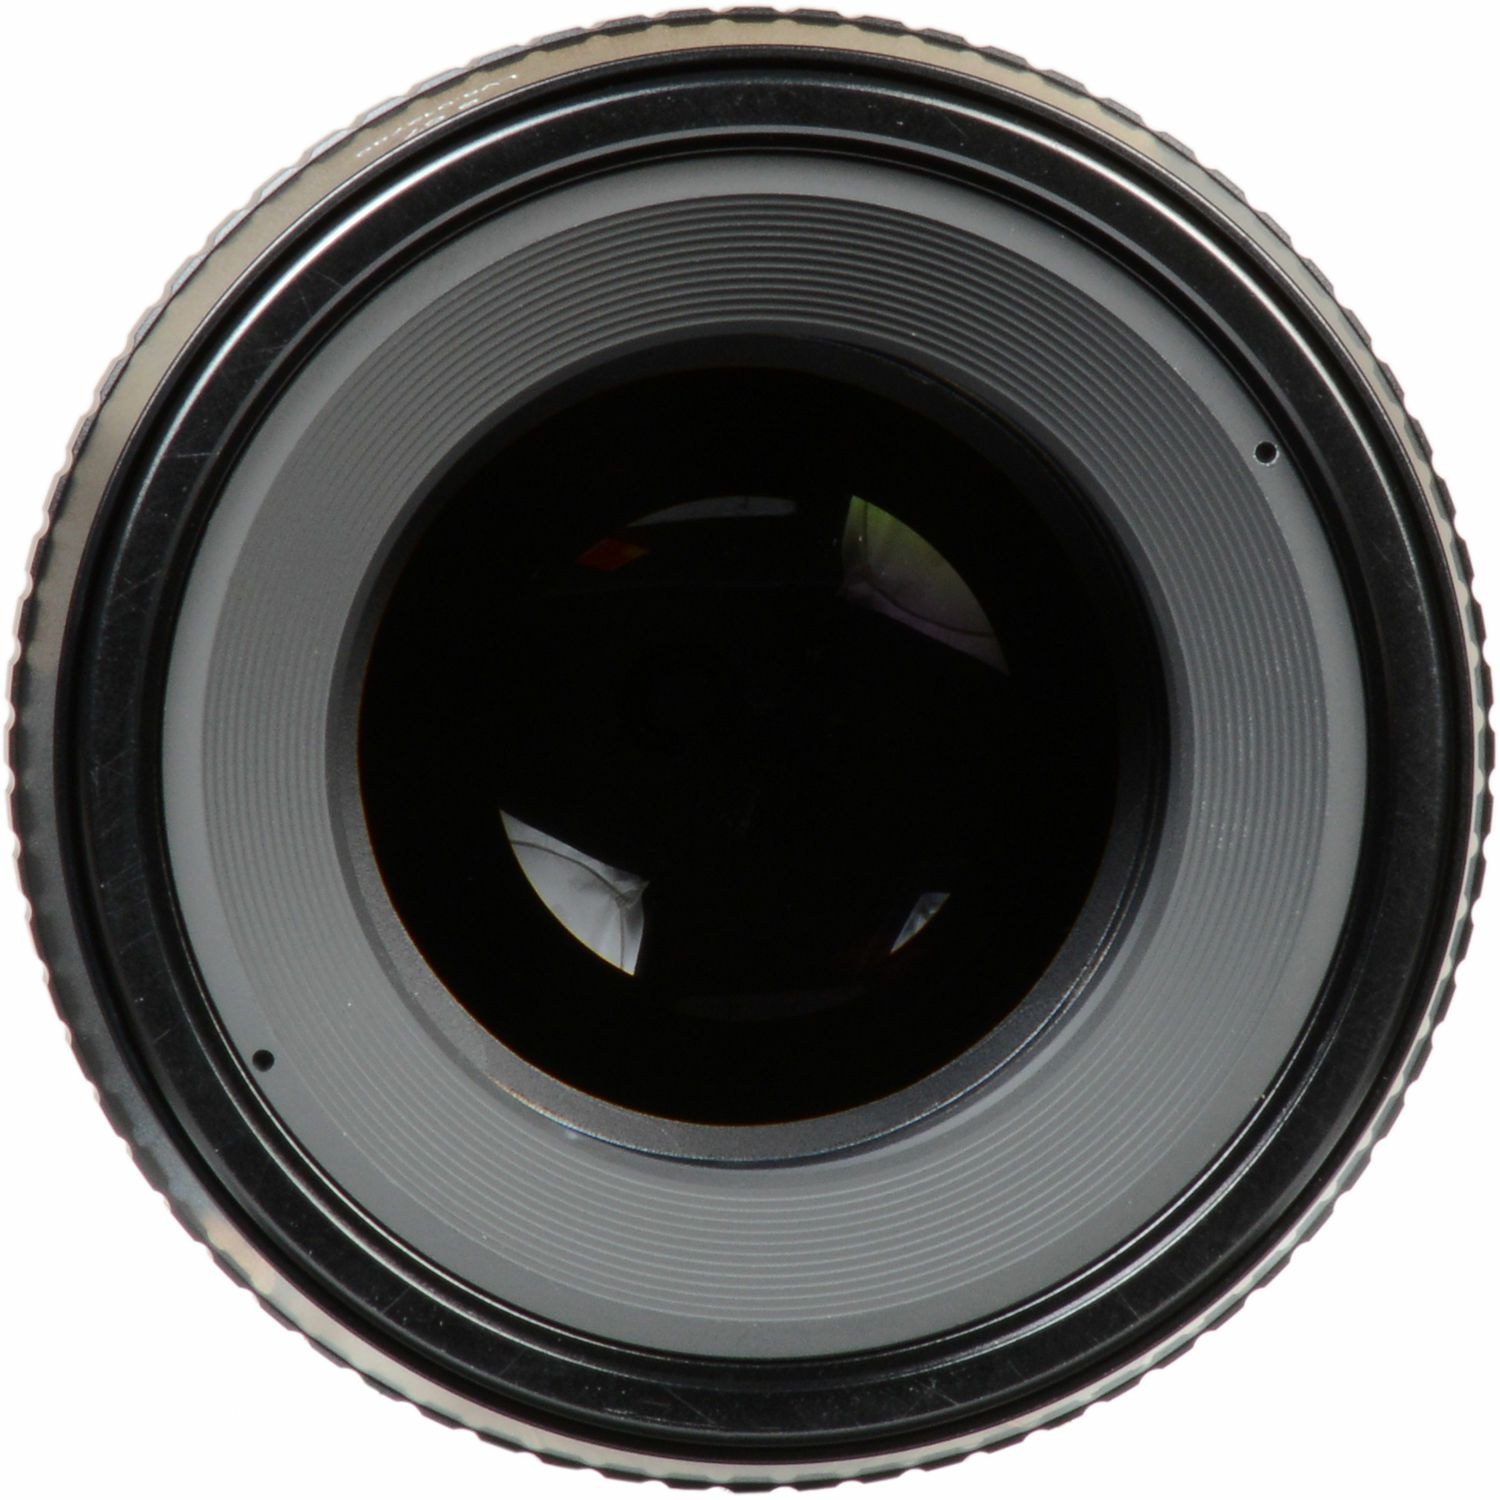 Lensbaby Velvet 85mm f/1.8 macro 1:2 portretni objektiv za Canon EF (LBV85C)